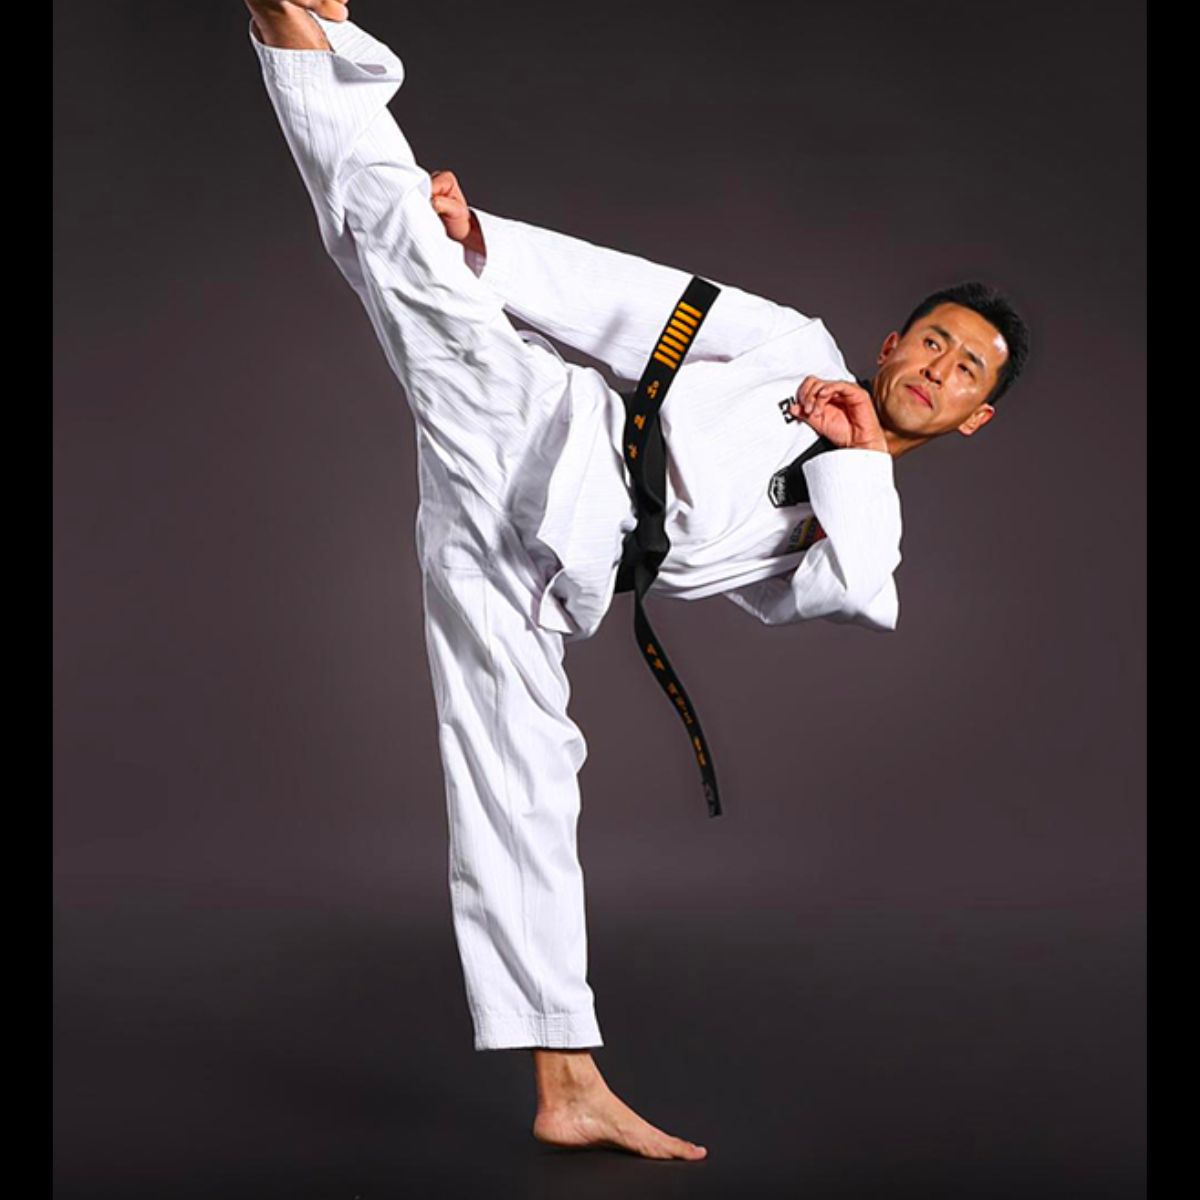 Võ phục karate dùng chất liệu gì?